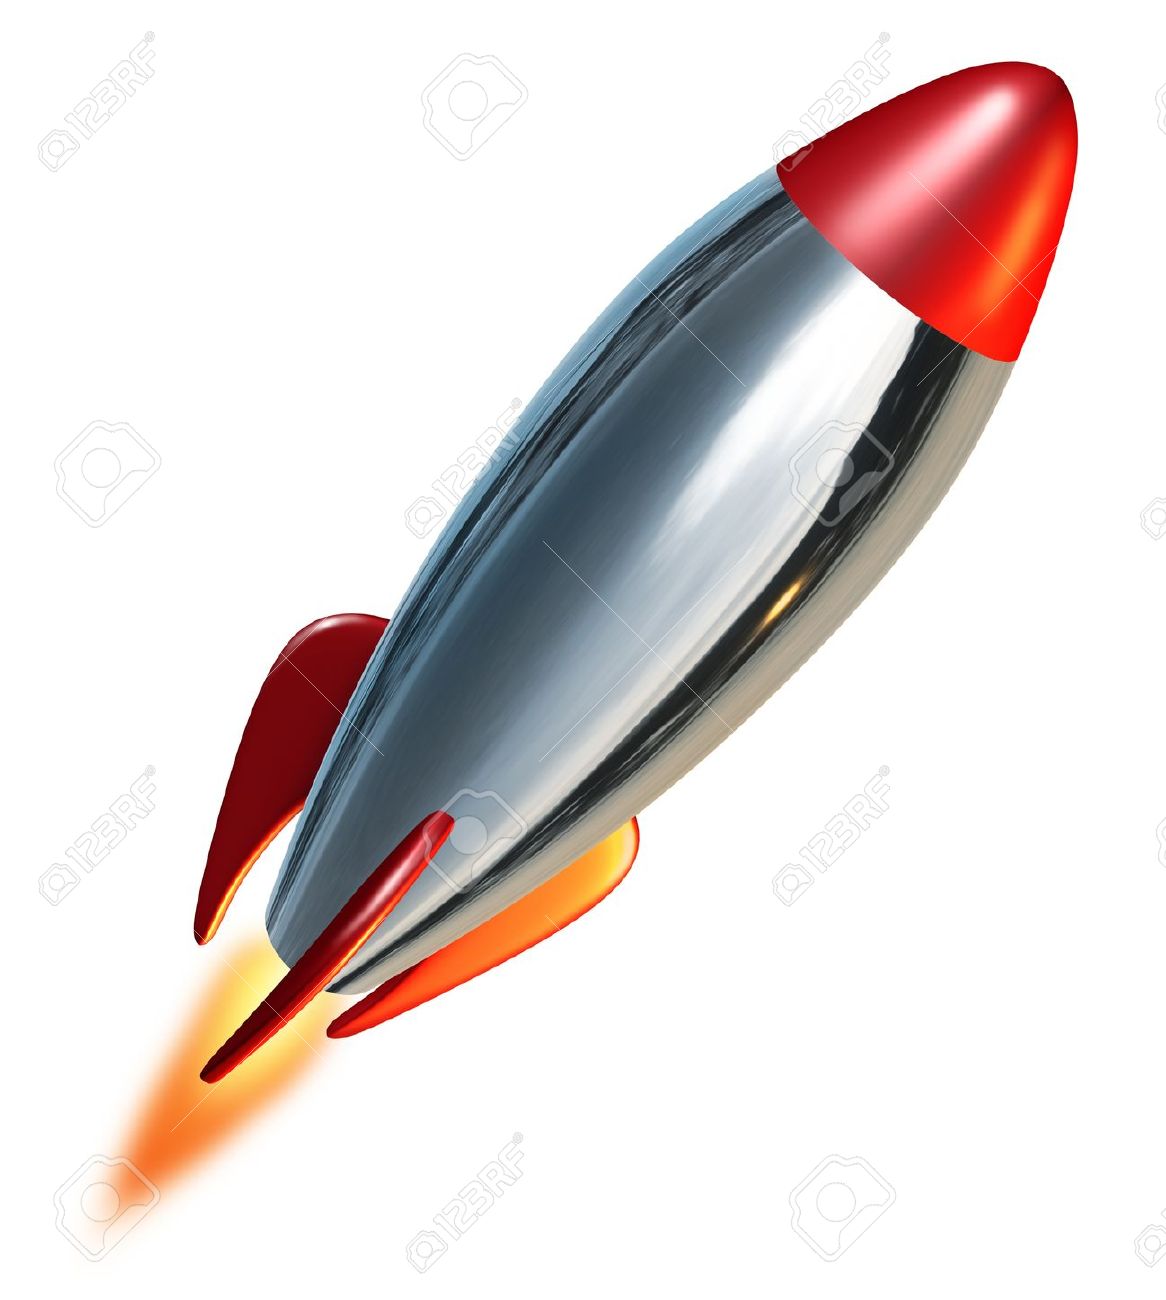 ... Missile Clip Art ... - Missile Clip Art